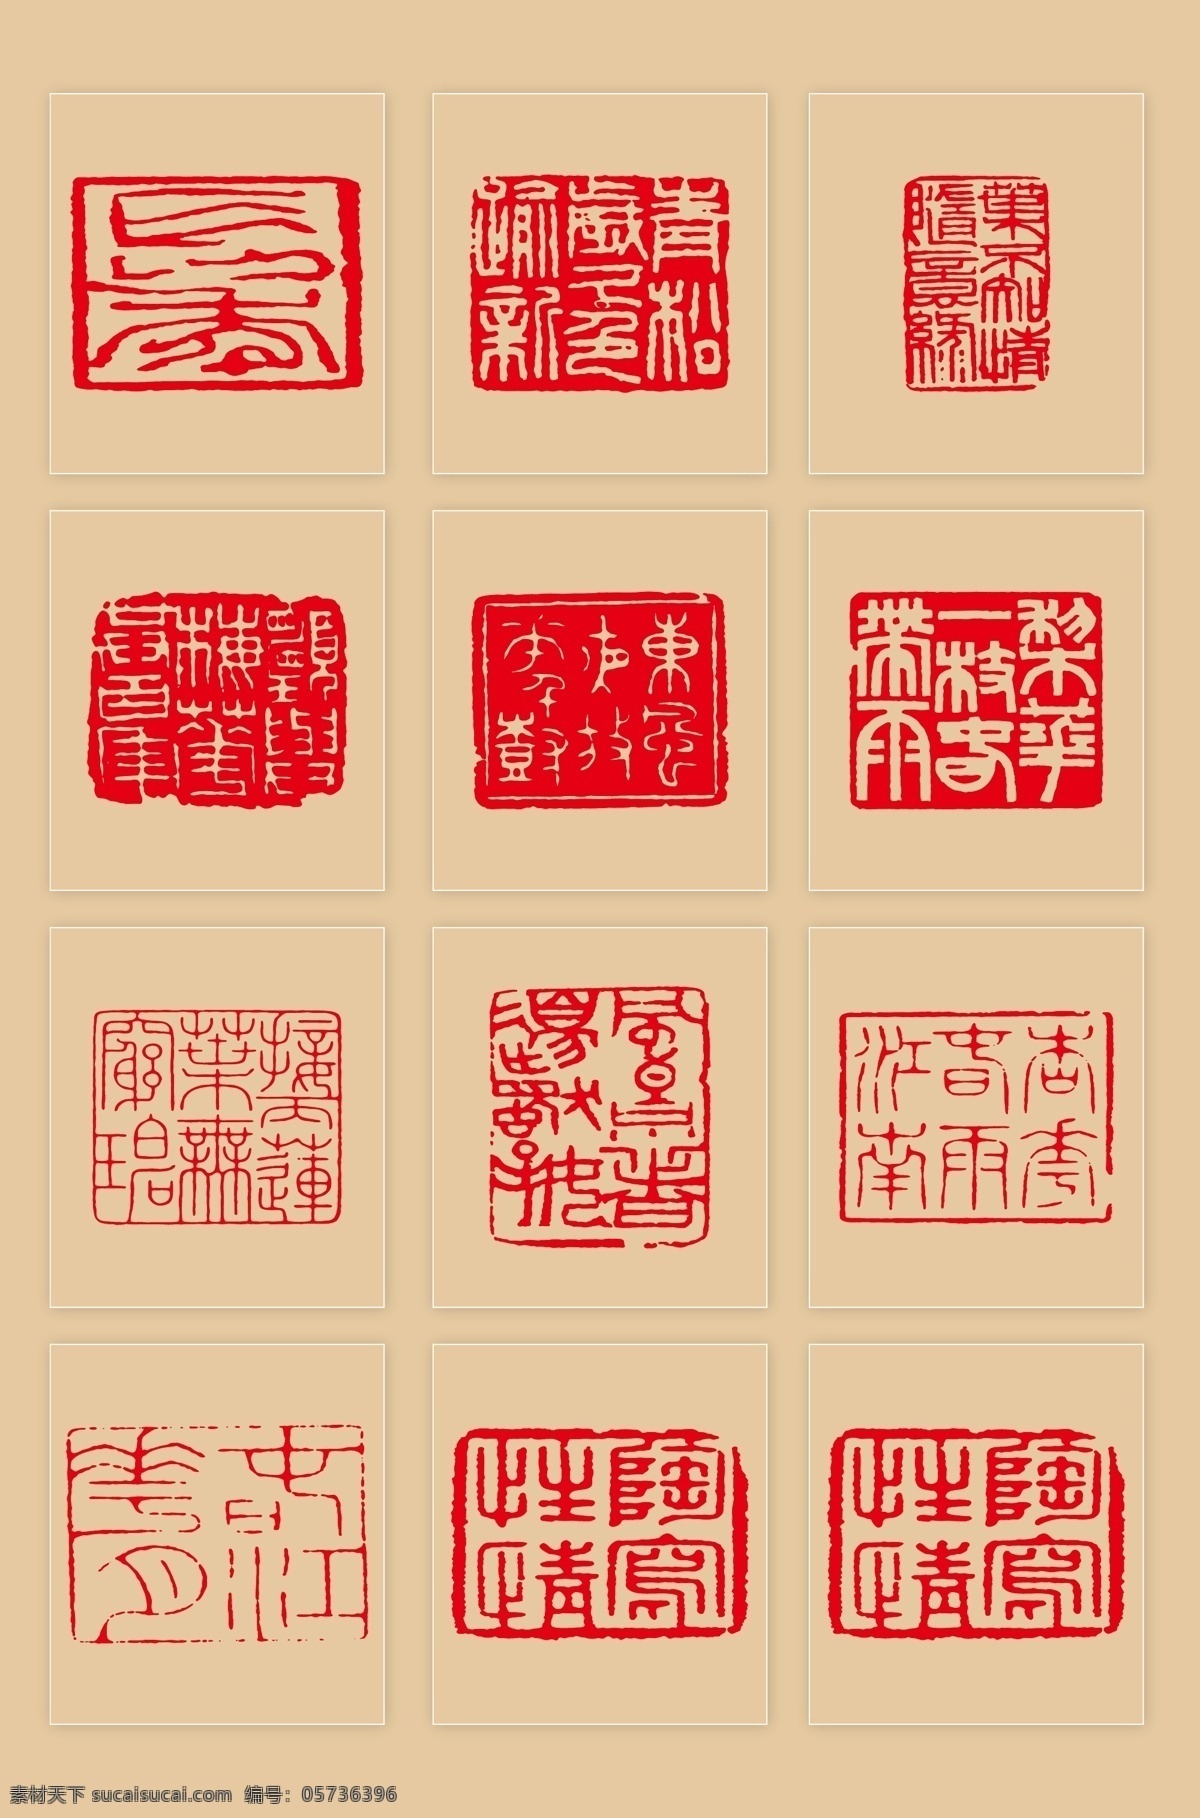 中国 古代 传统 印章 中国古代印章 传统印章 矢量印章 矢量图腾 古文印章 文化艺术 传统文化